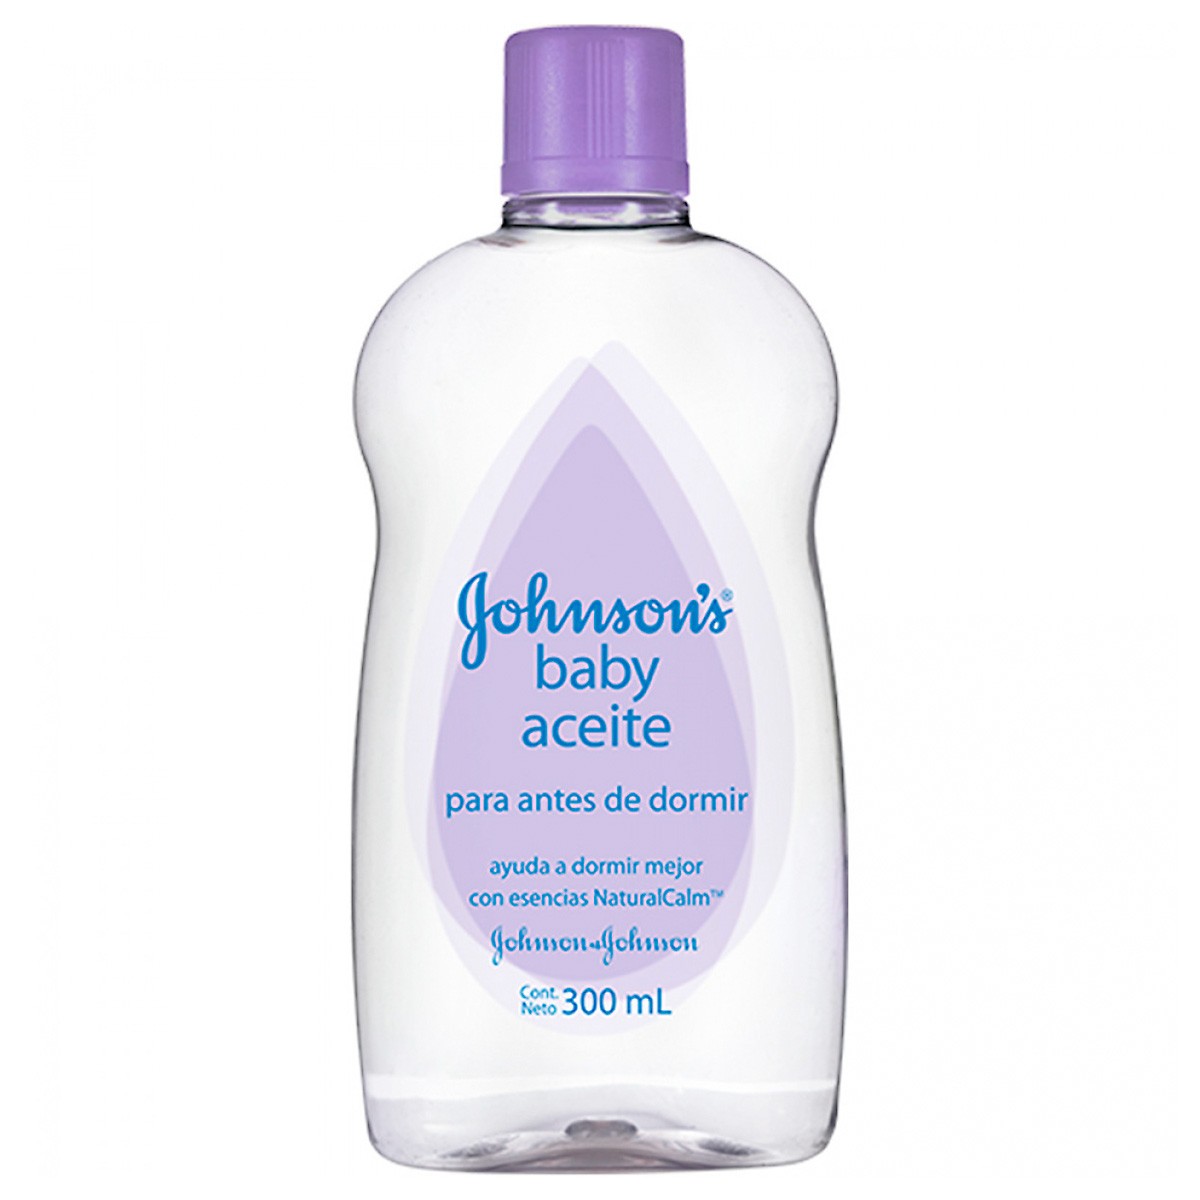 Johnson Aceite johnson 300ml